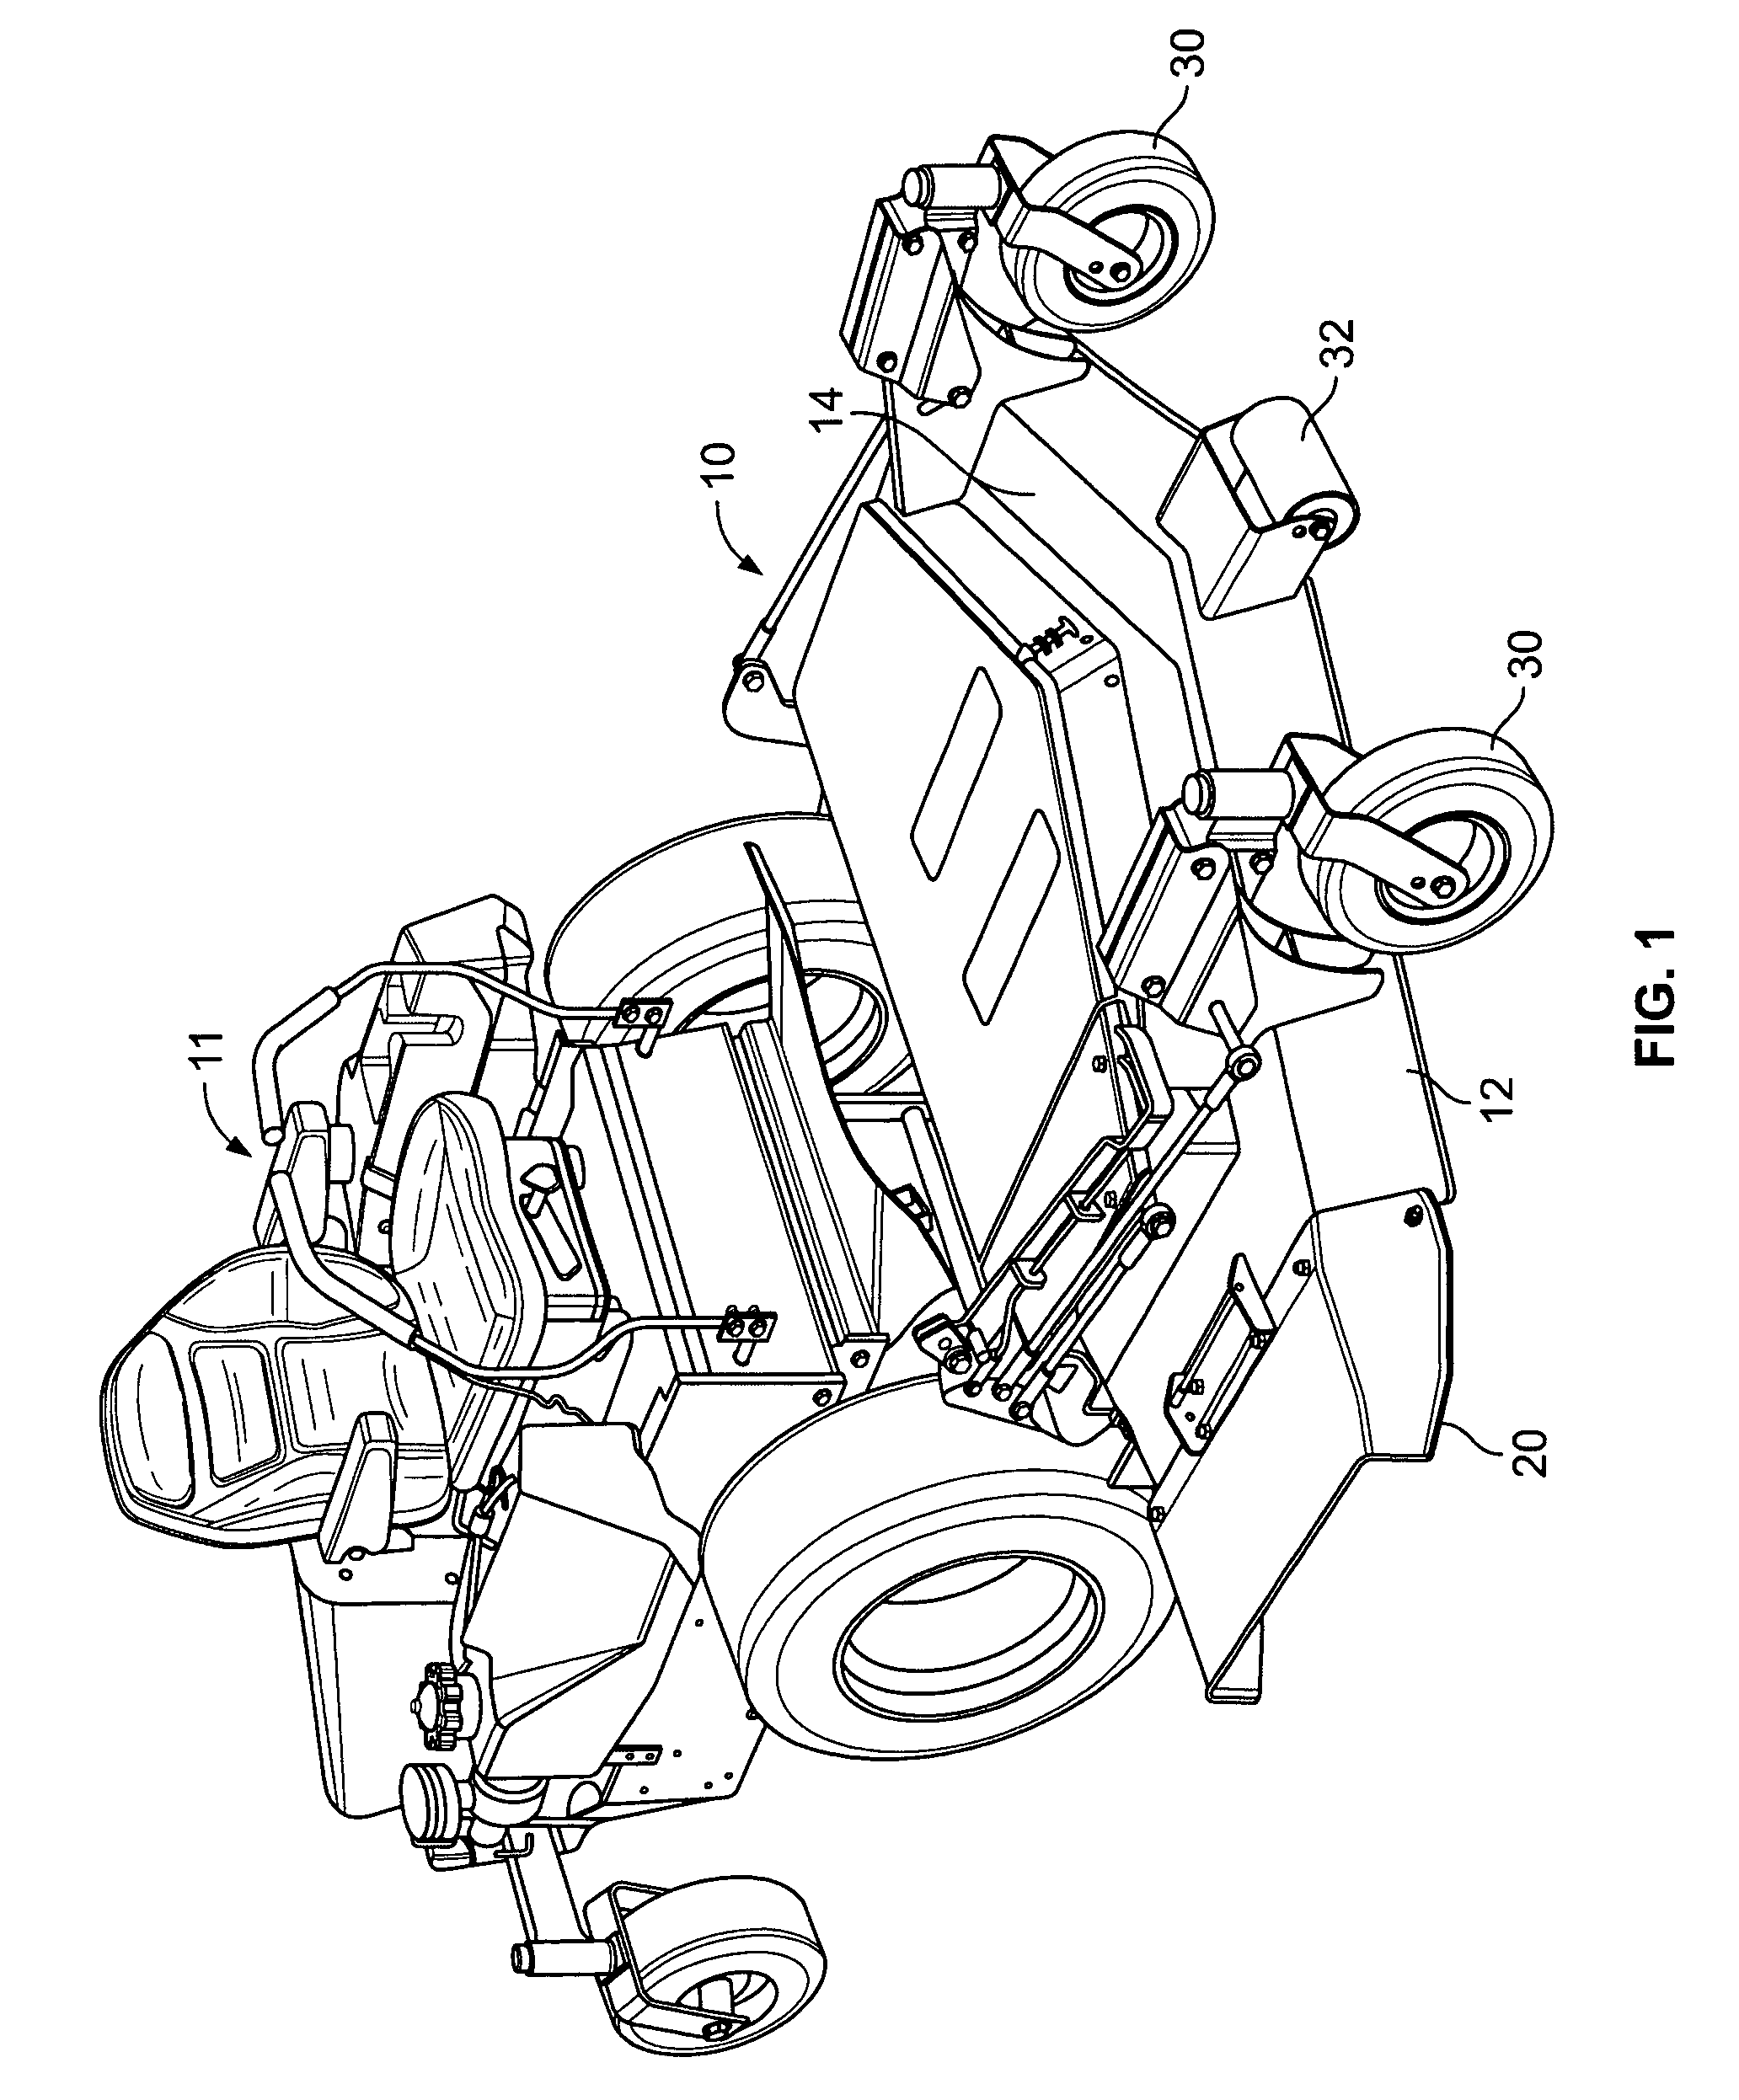 Mower attachment mechanism